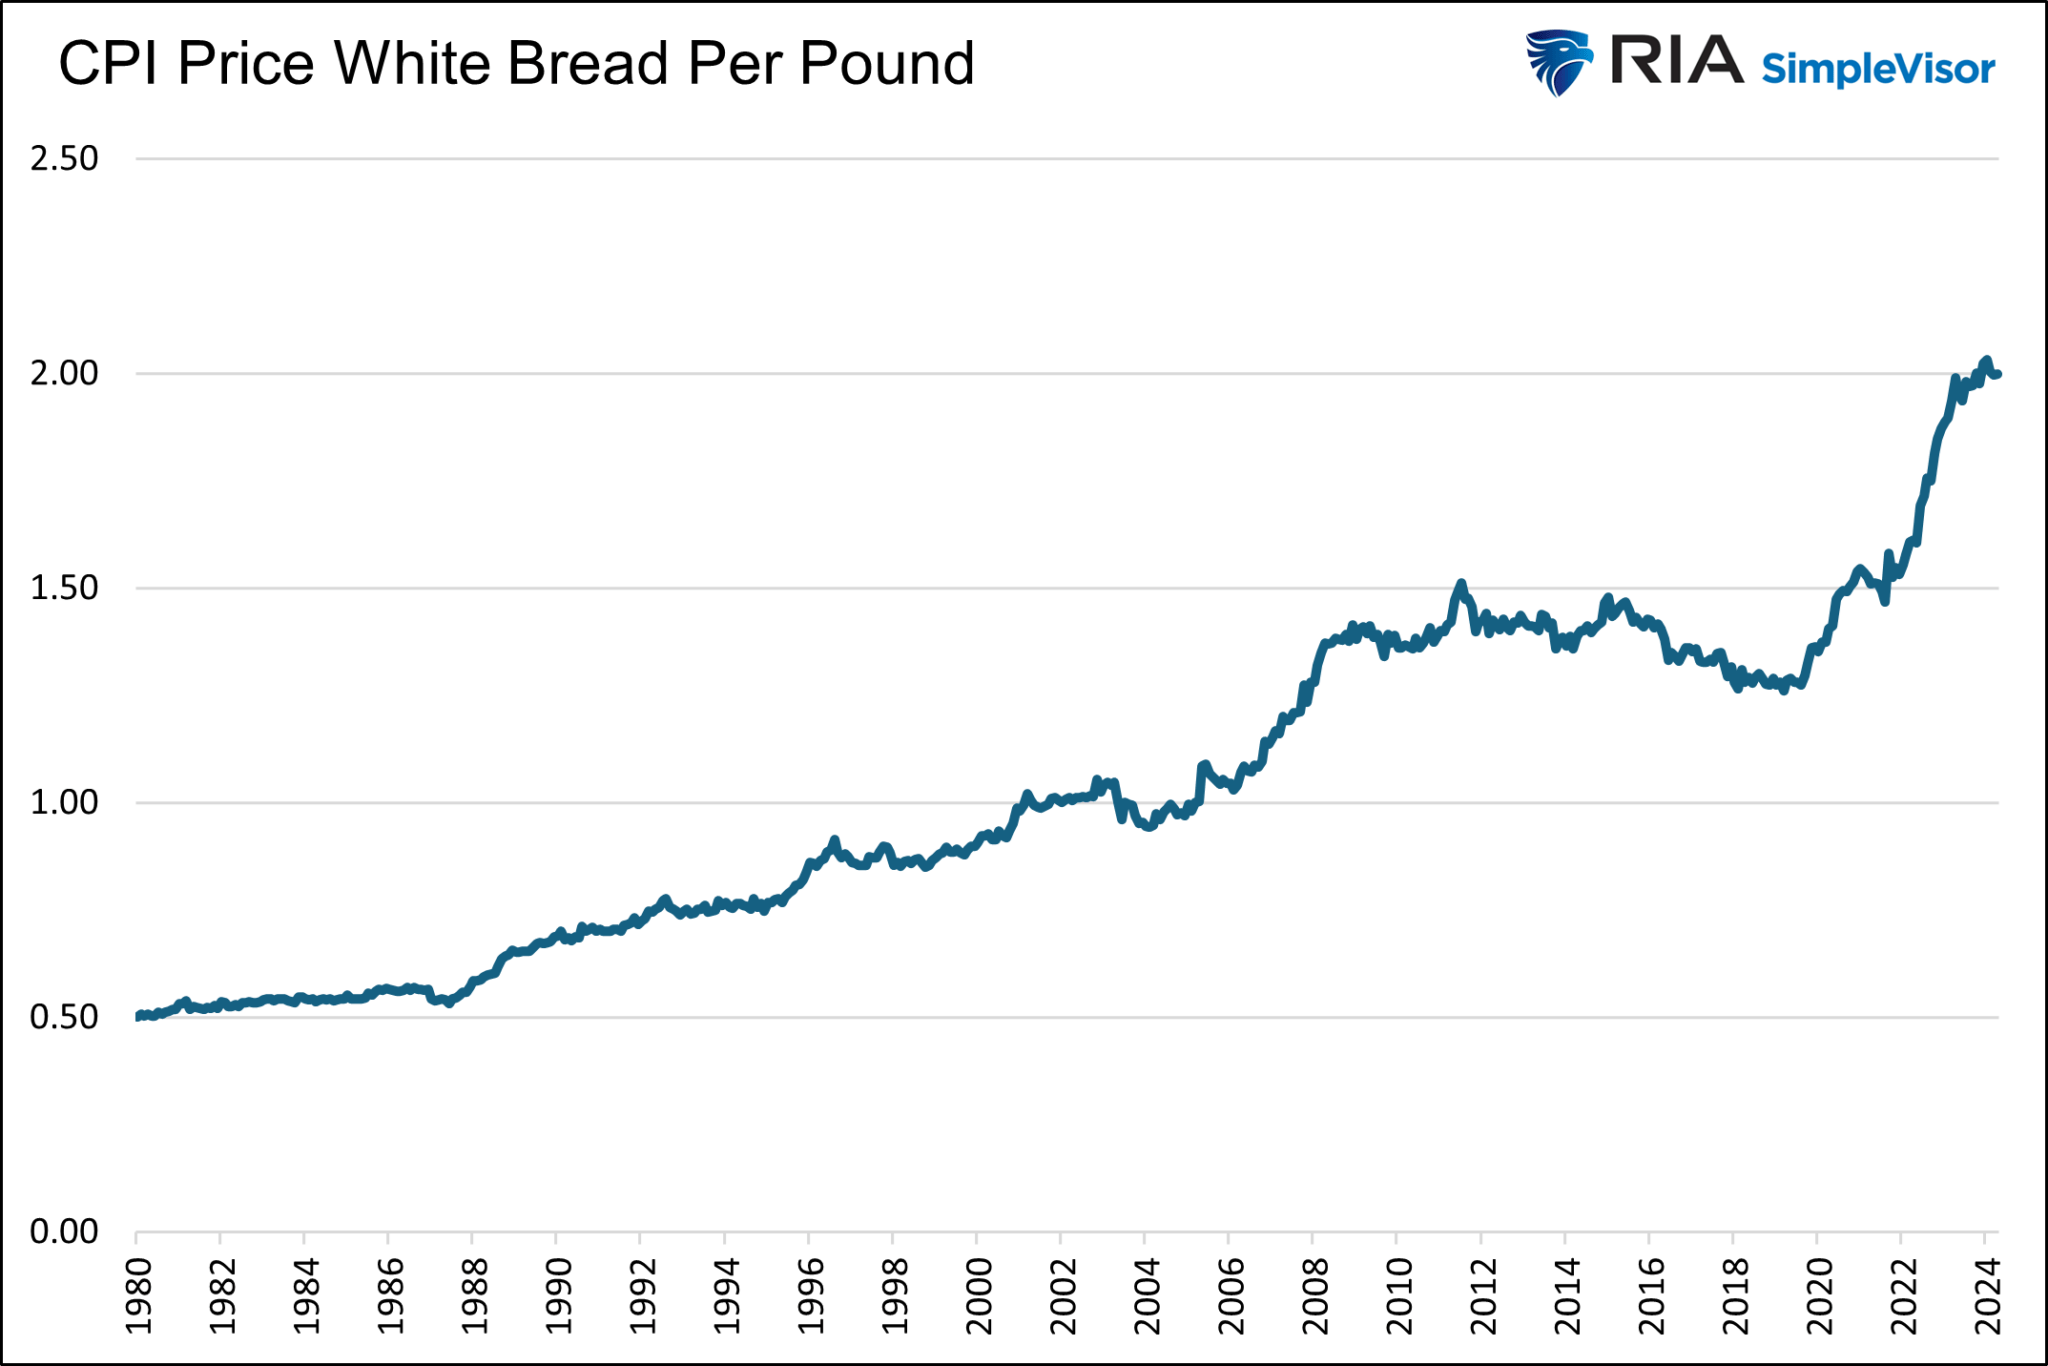 Vergleich der Preise für ein Pfund (450 g) Weißbrot in den USA